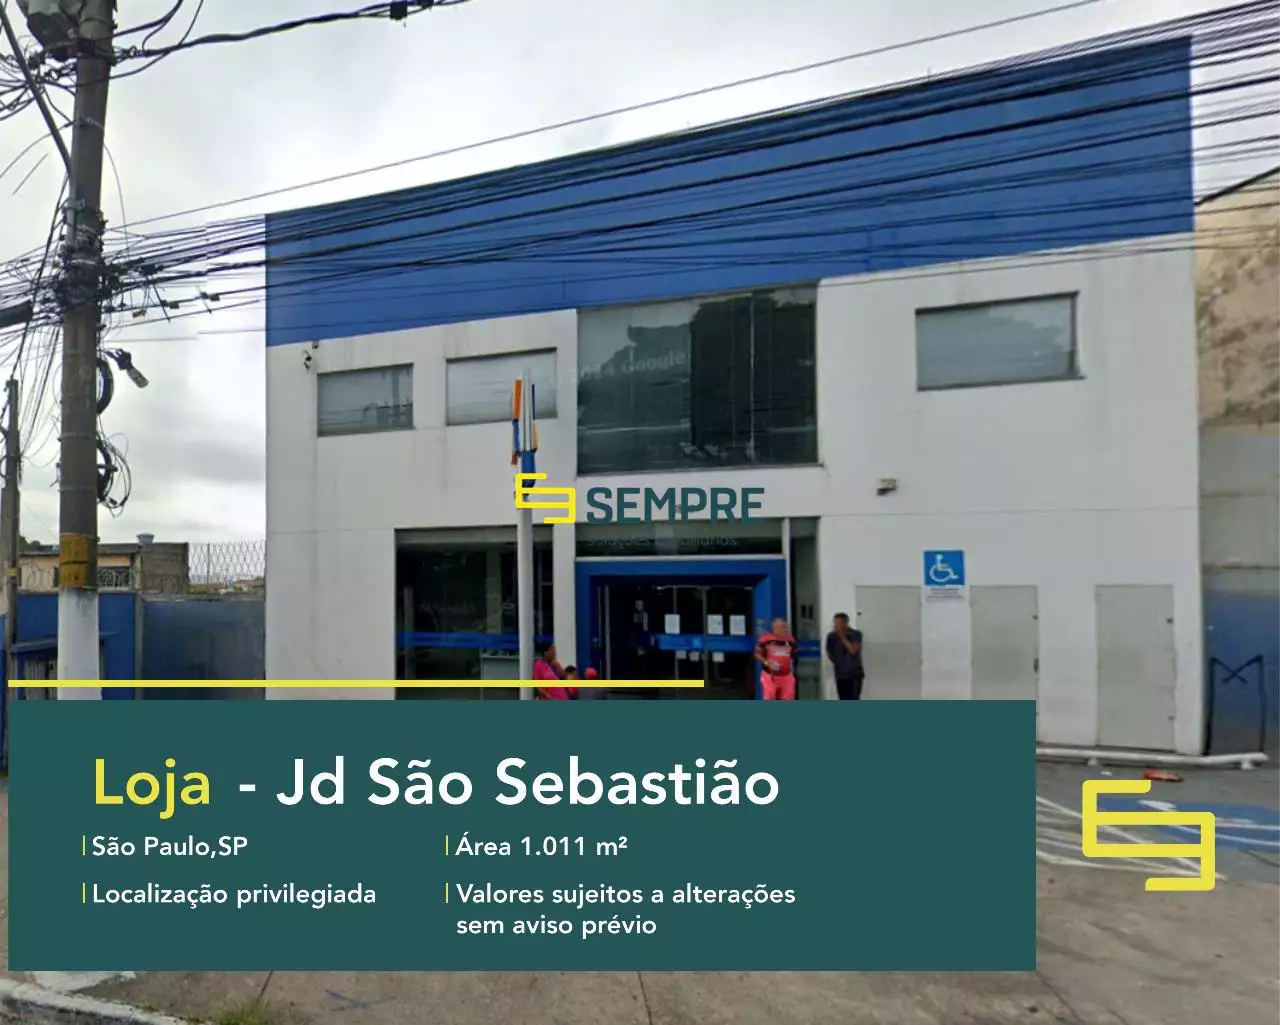 Loja em Jardim São Sebastião para locação - São Paulo, em excelente localização. O estabelecimento comercial conta com área de 1.011 m².